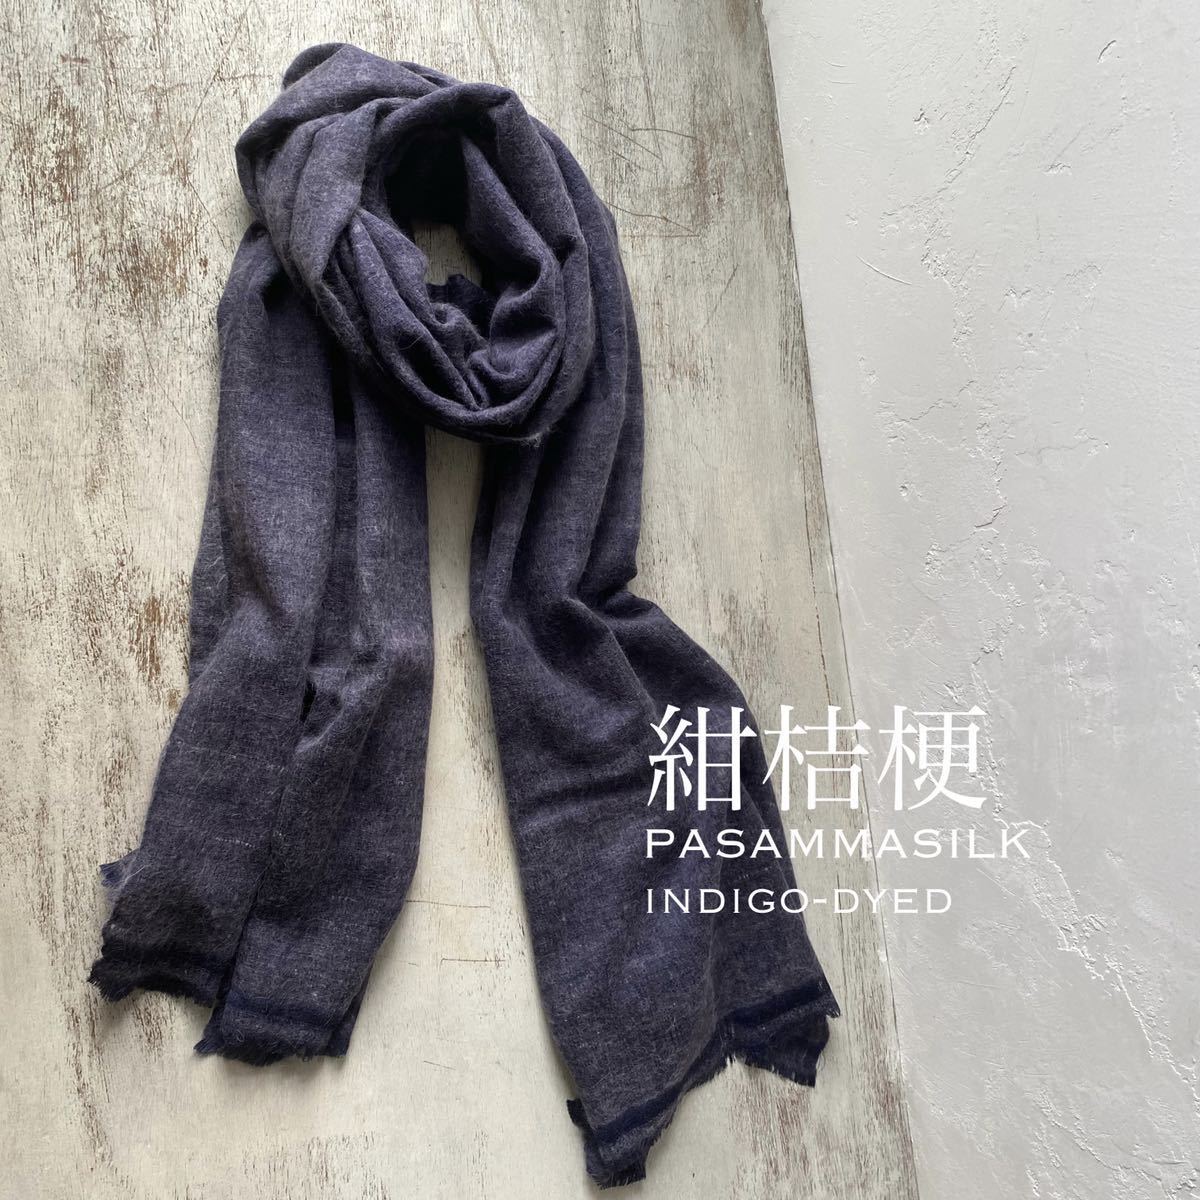 新品 藍染め 絞り 手織りパシュミナシルクストール /ハンドメイド/藍